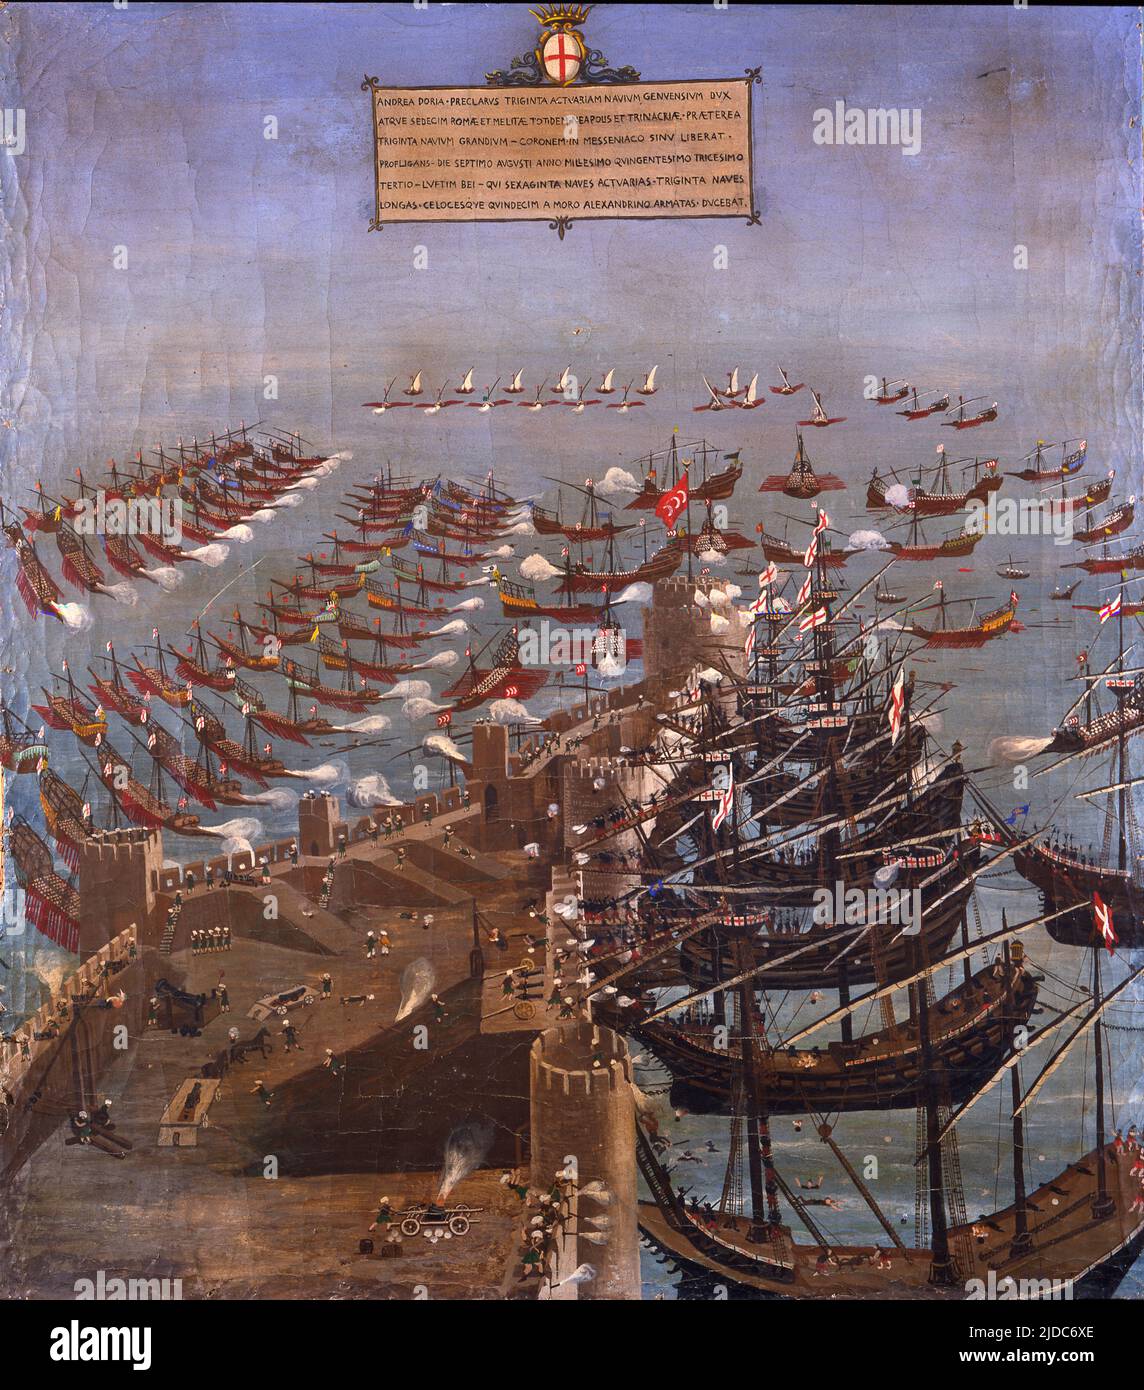 Flota cristiana bajo el mando de Andrea Doria conquistando Corone en 1532, Grecia, óleo sobre lienzo, siglo 16th. Foto de stock